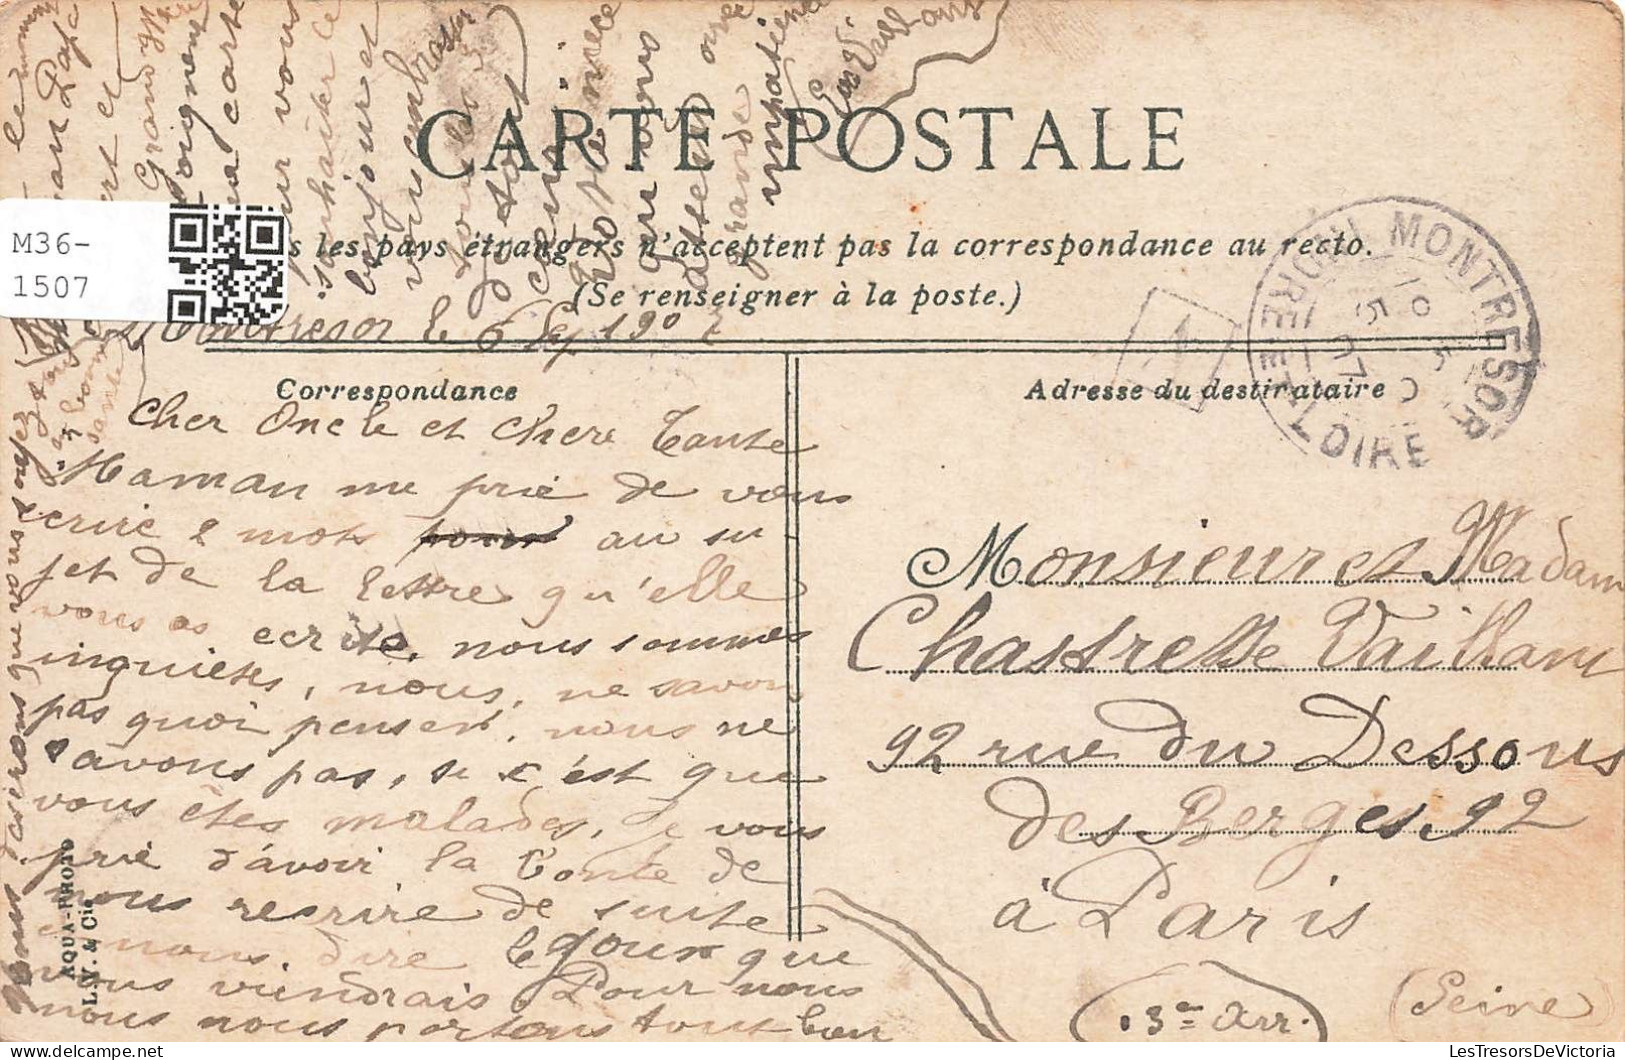 FRANCE - Melle - Portail De L'église Saint Hilaire - Carte Postale Ancienne - Melle